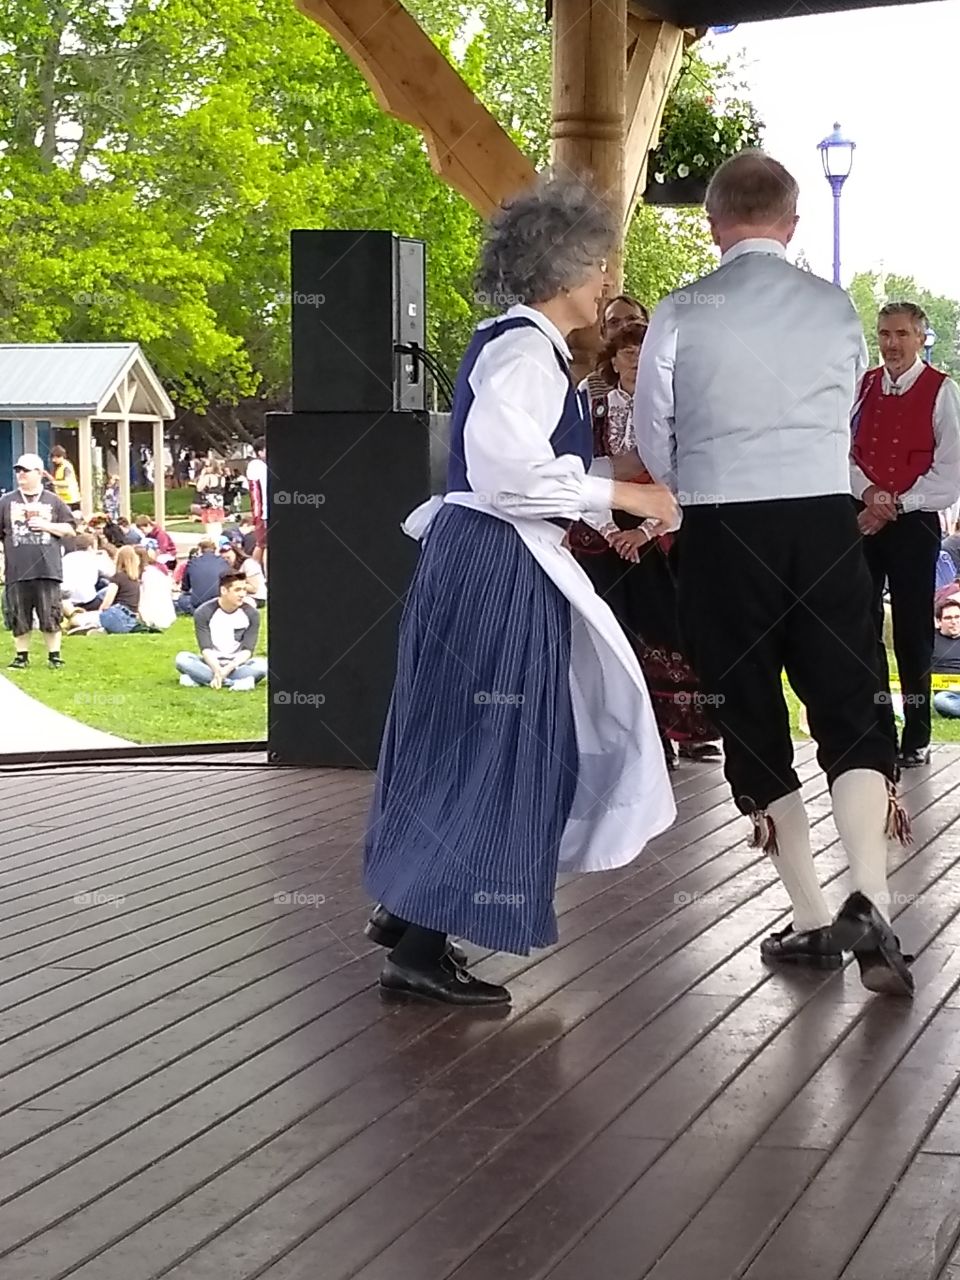 Scandinavian traditional dancing